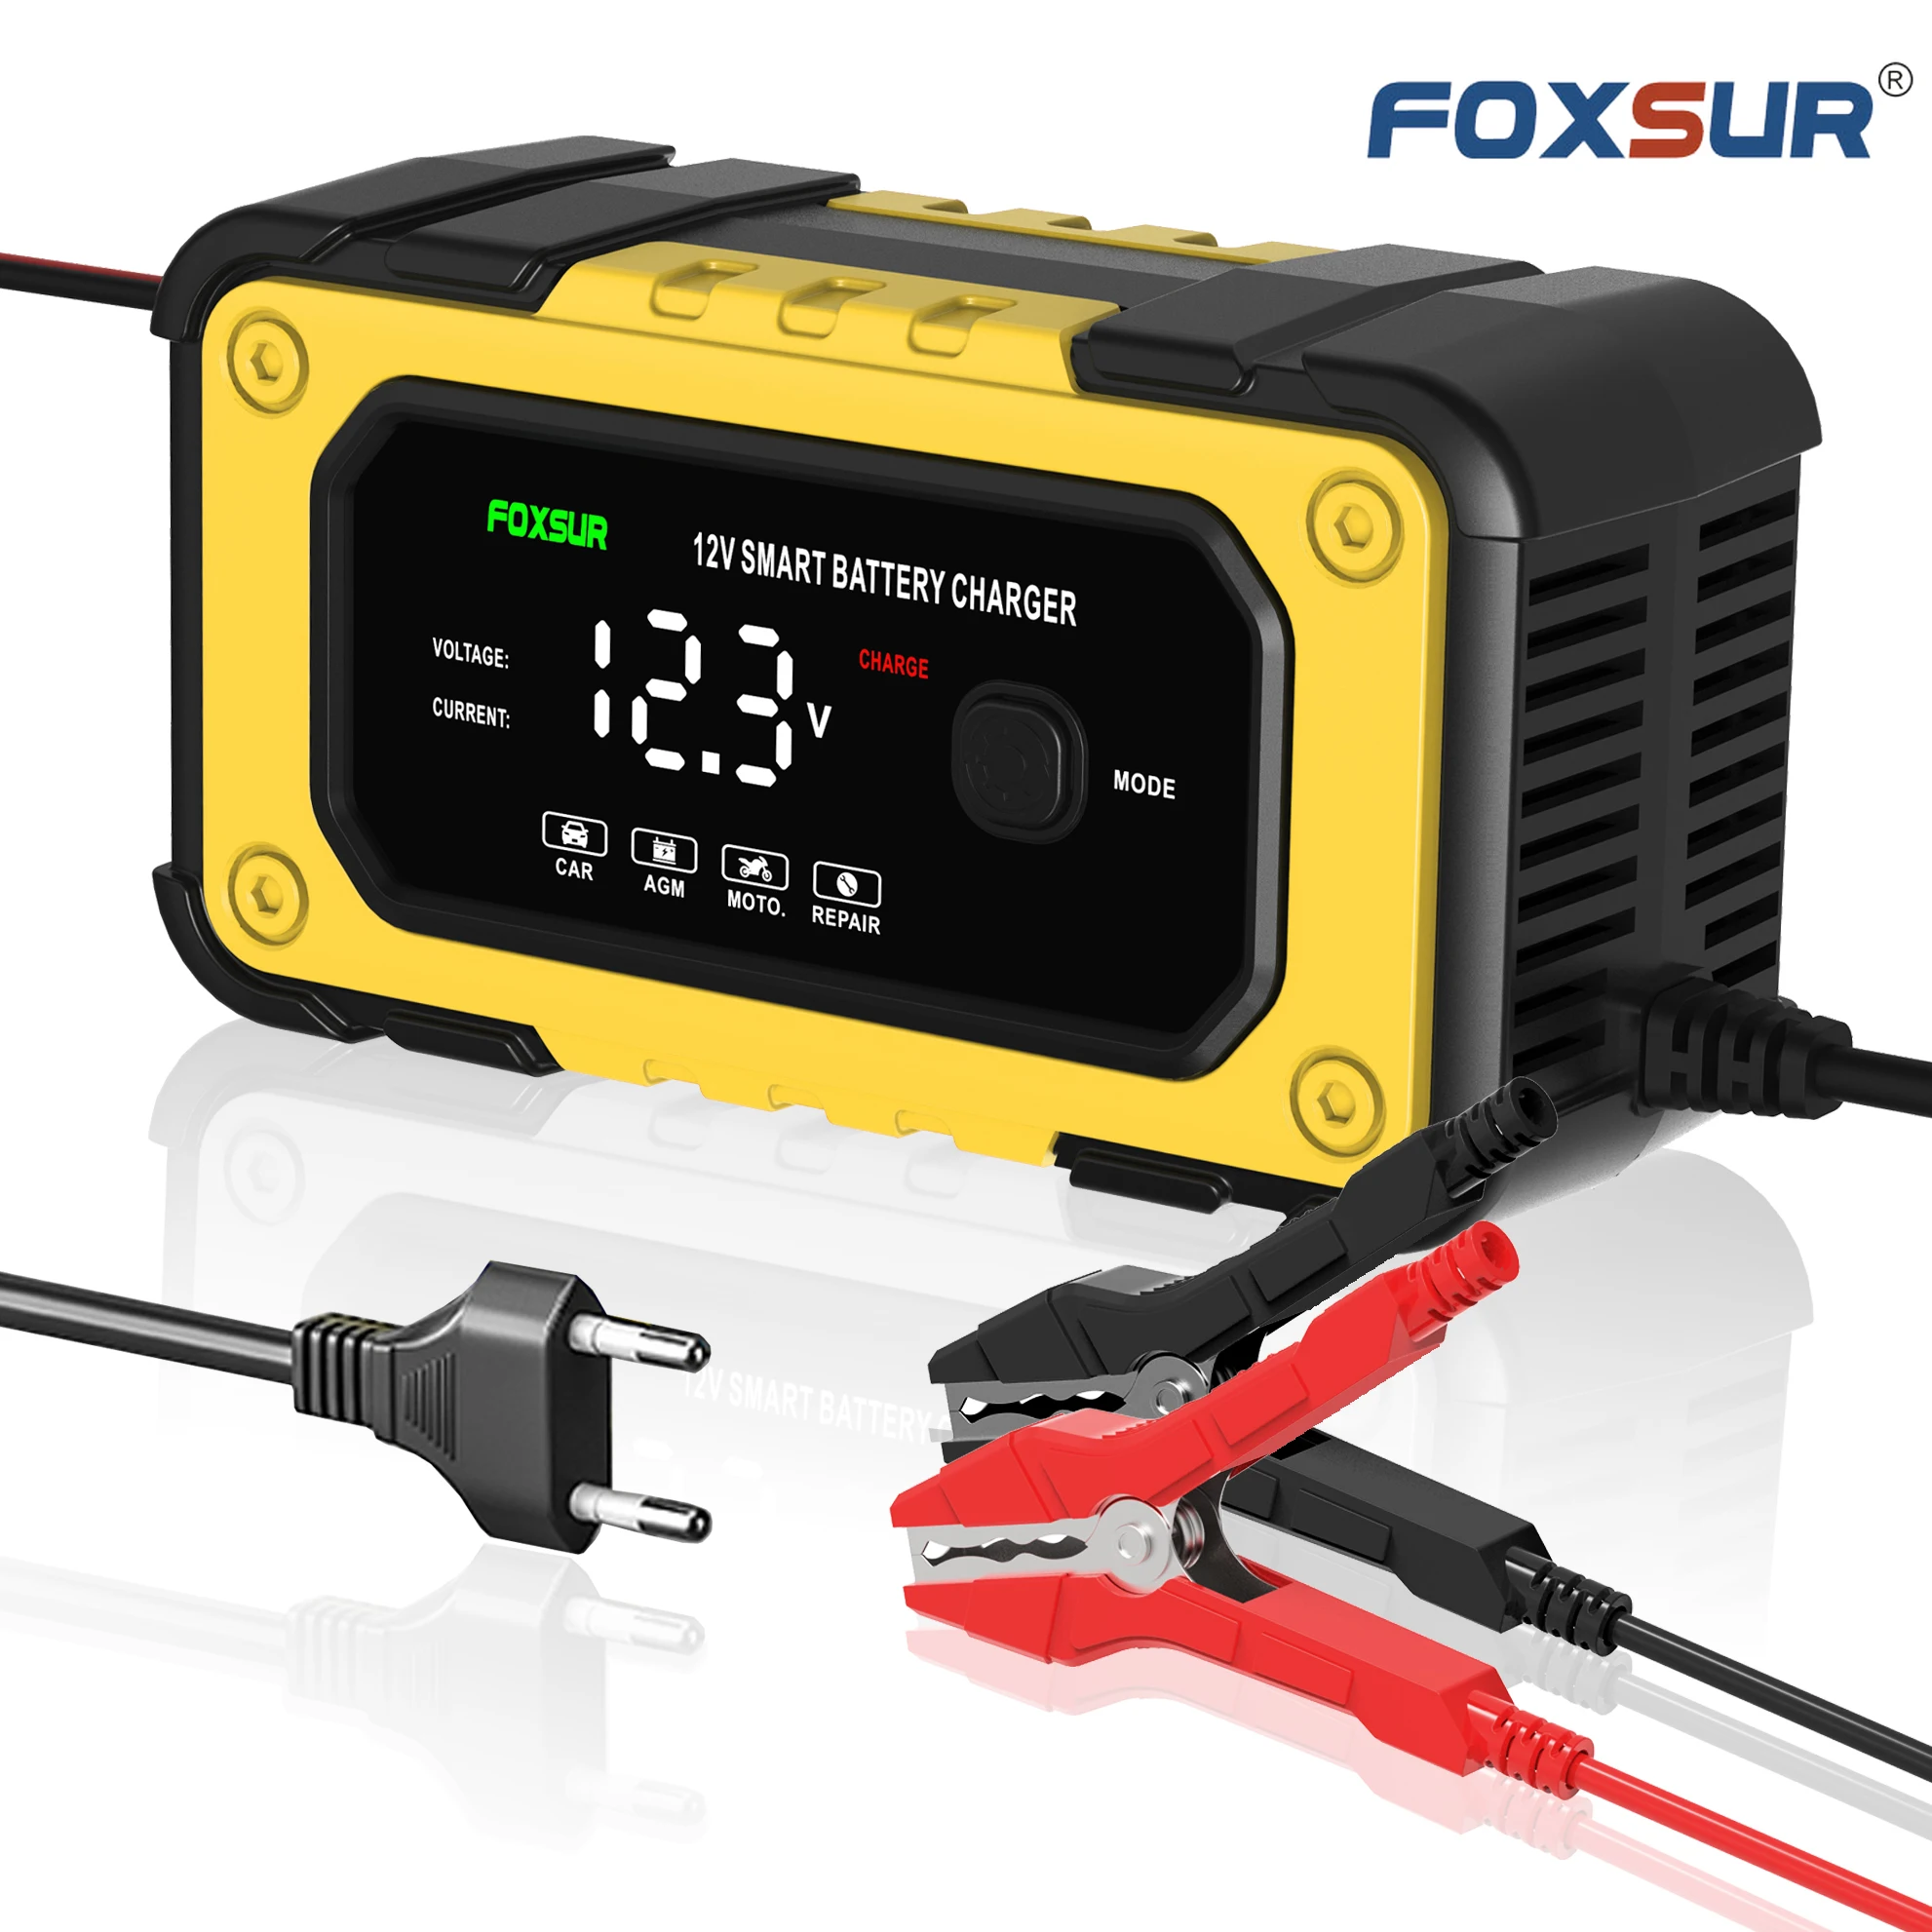 Achetez Chargeur de Batterie Foxsur 12V 7A 7 Étages Automobile